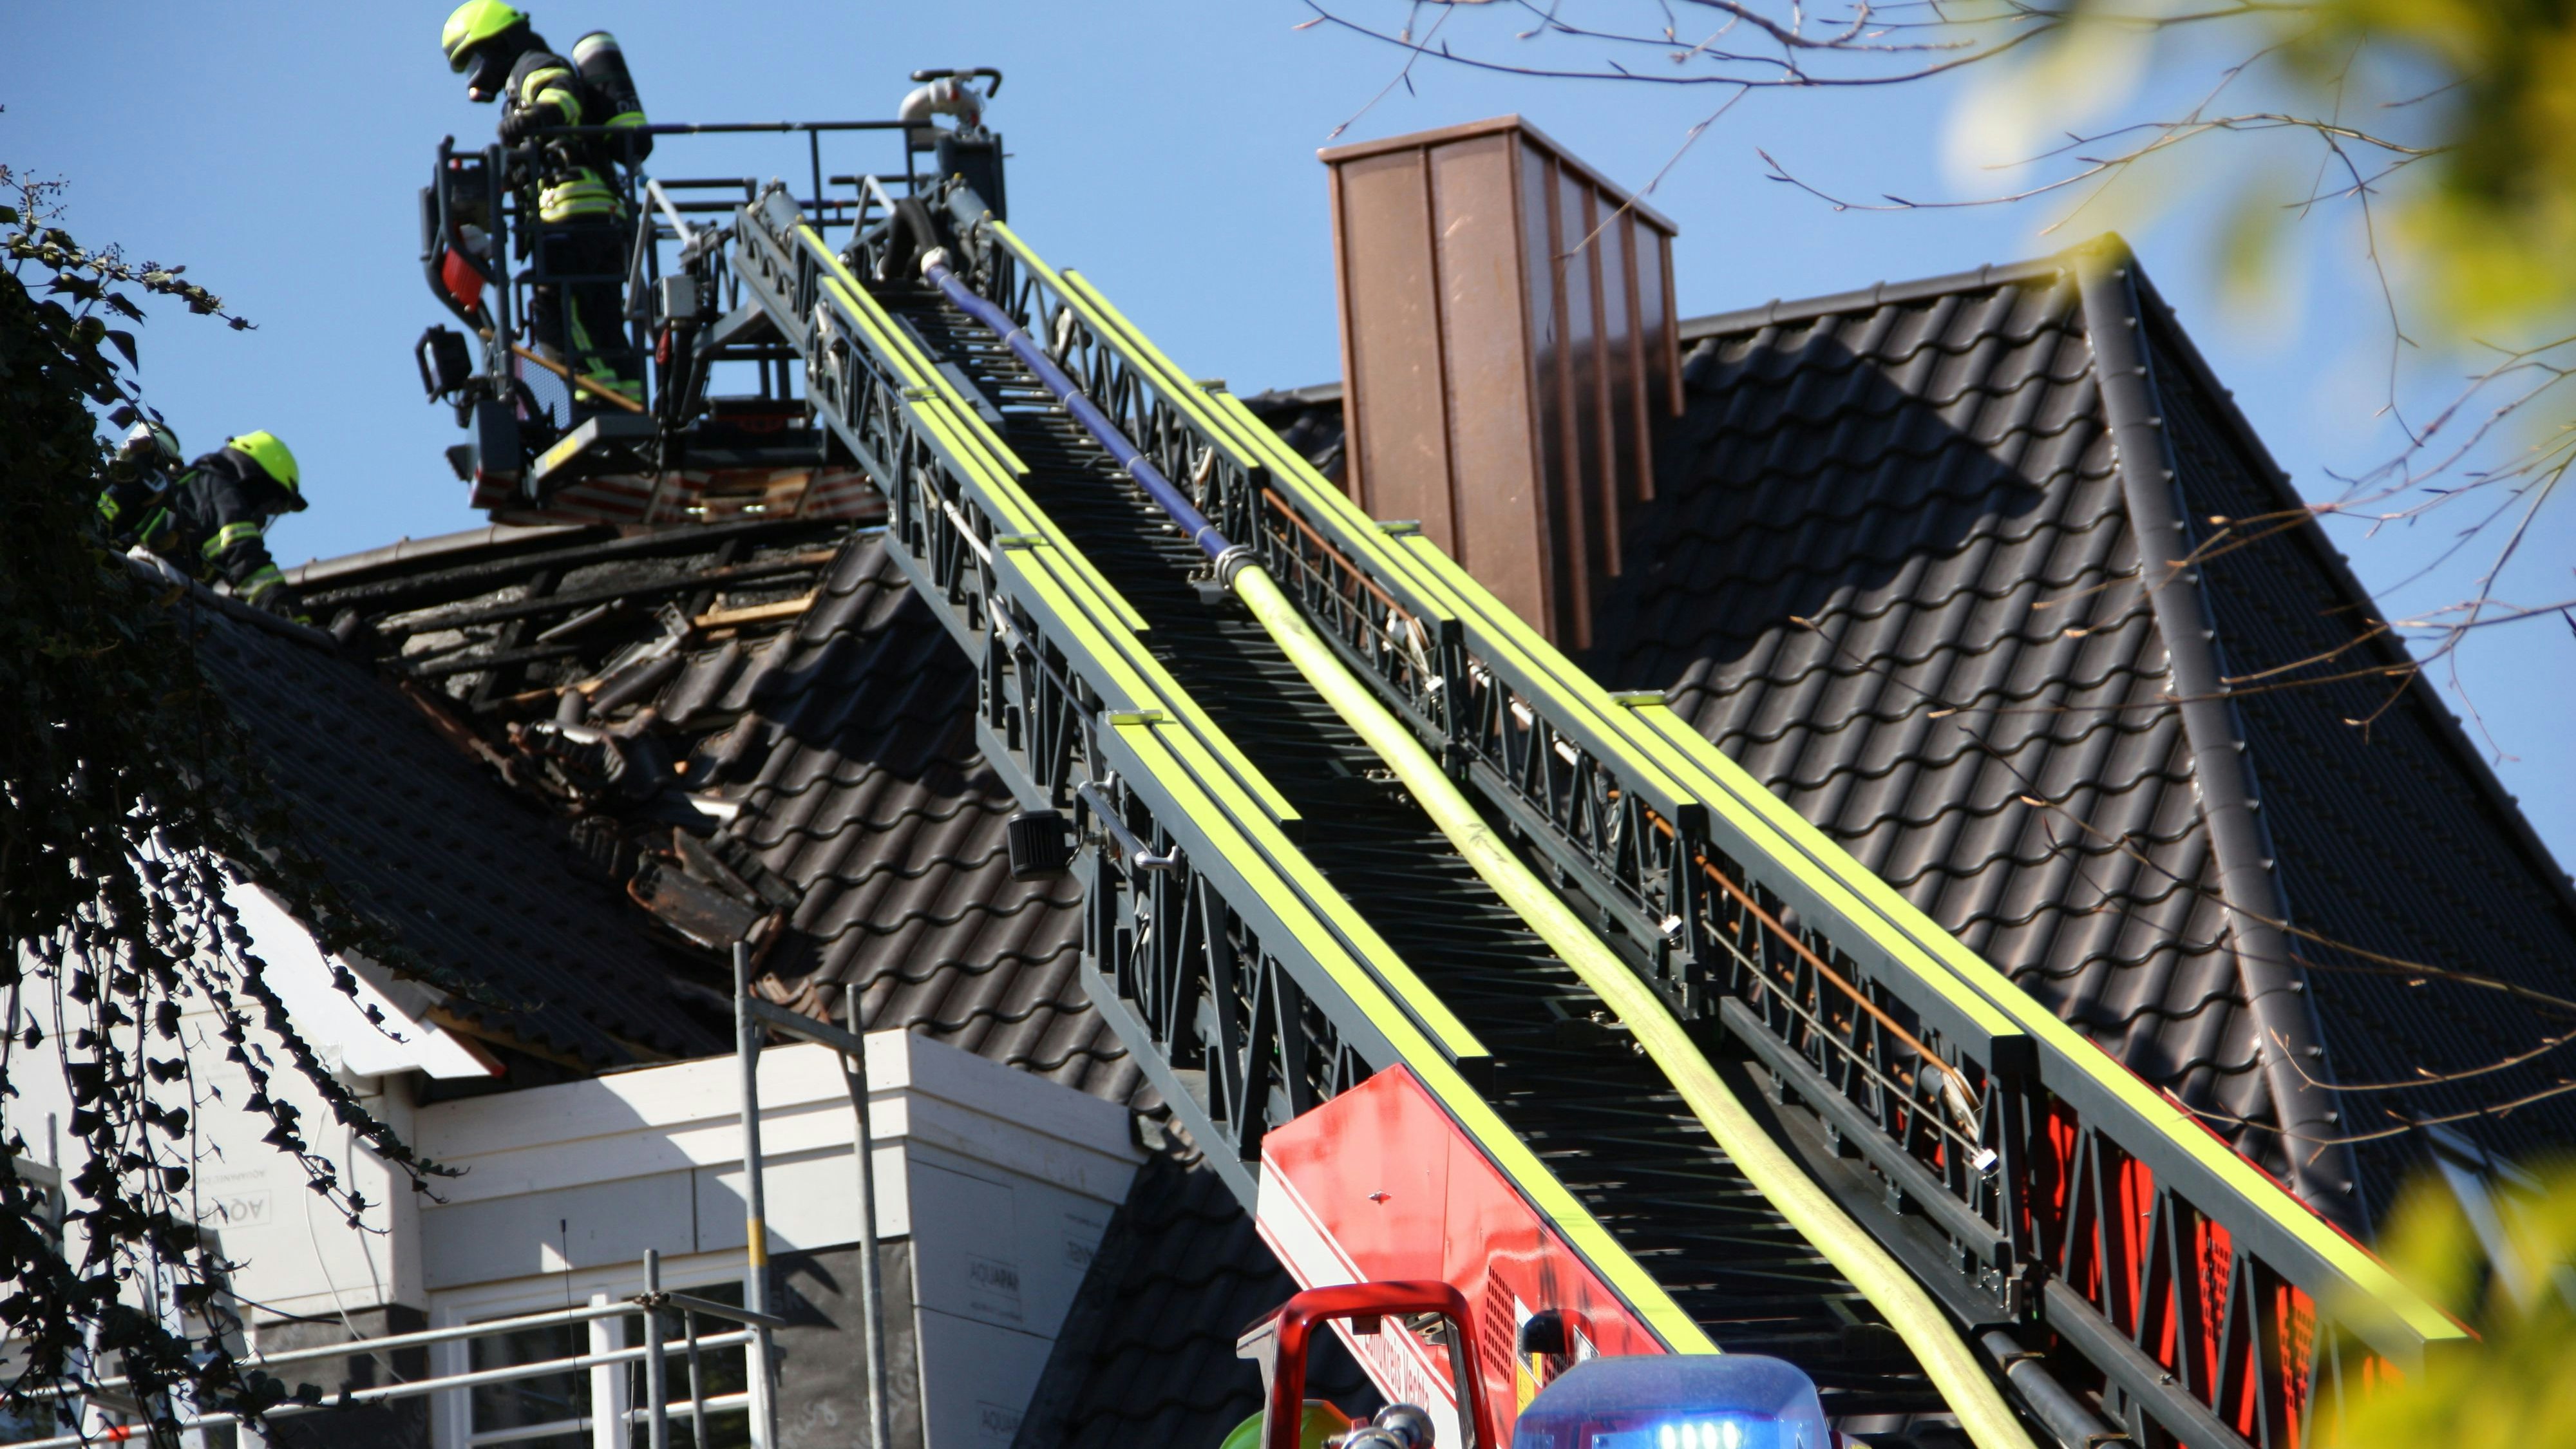 Wie hoch der Schaden am Dachstuhl ist, konnte bislang nicht festgestellt werden.&nbsp; &nbsp;Fotos: Bernhardt